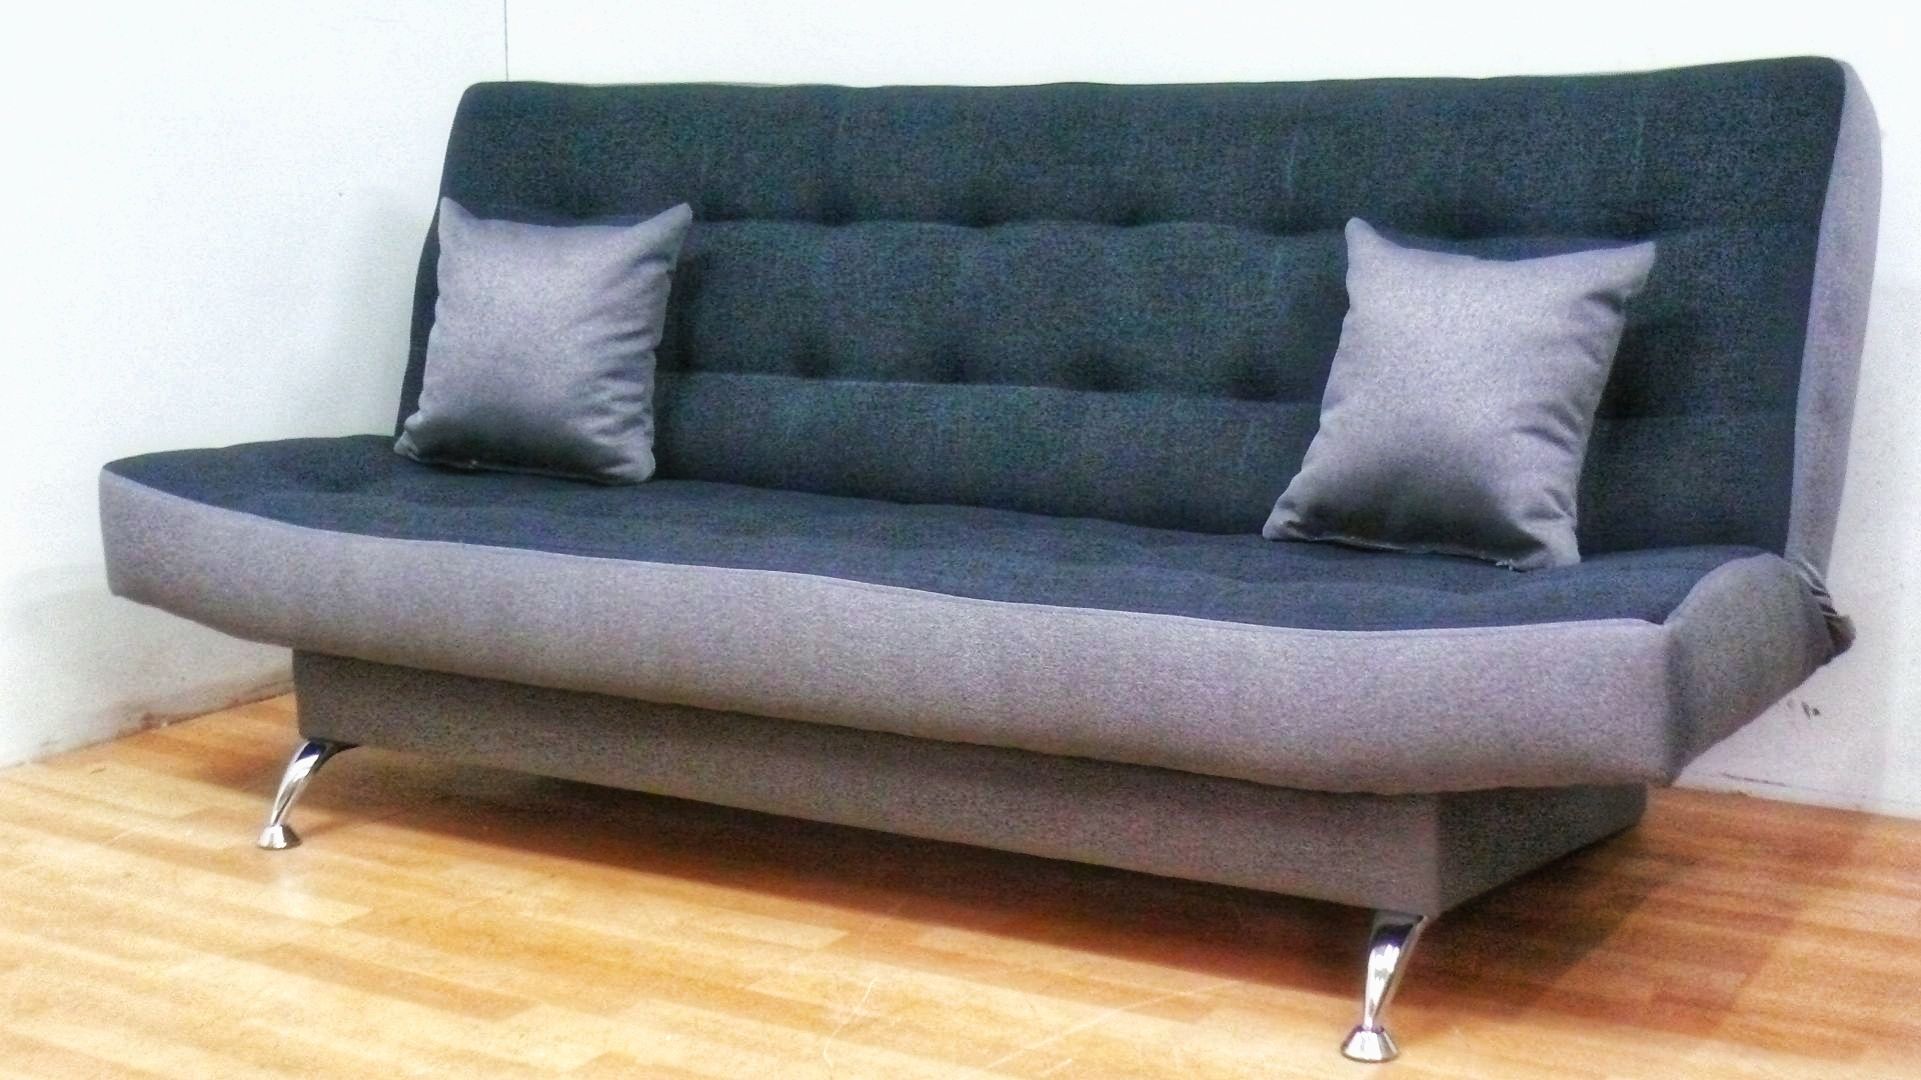 Nowa sofa kanapa funkcja spania wersalka tapczan łóżko